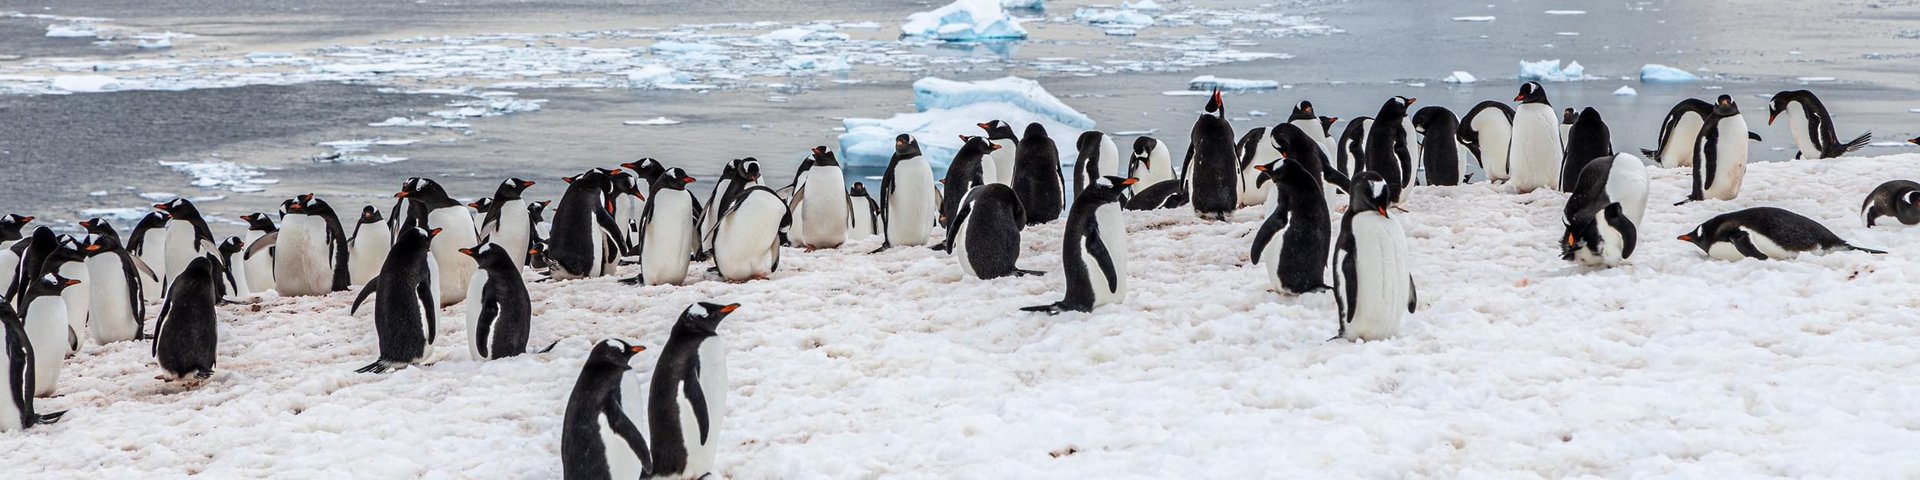 Pinguinkolonie auf Danco Island